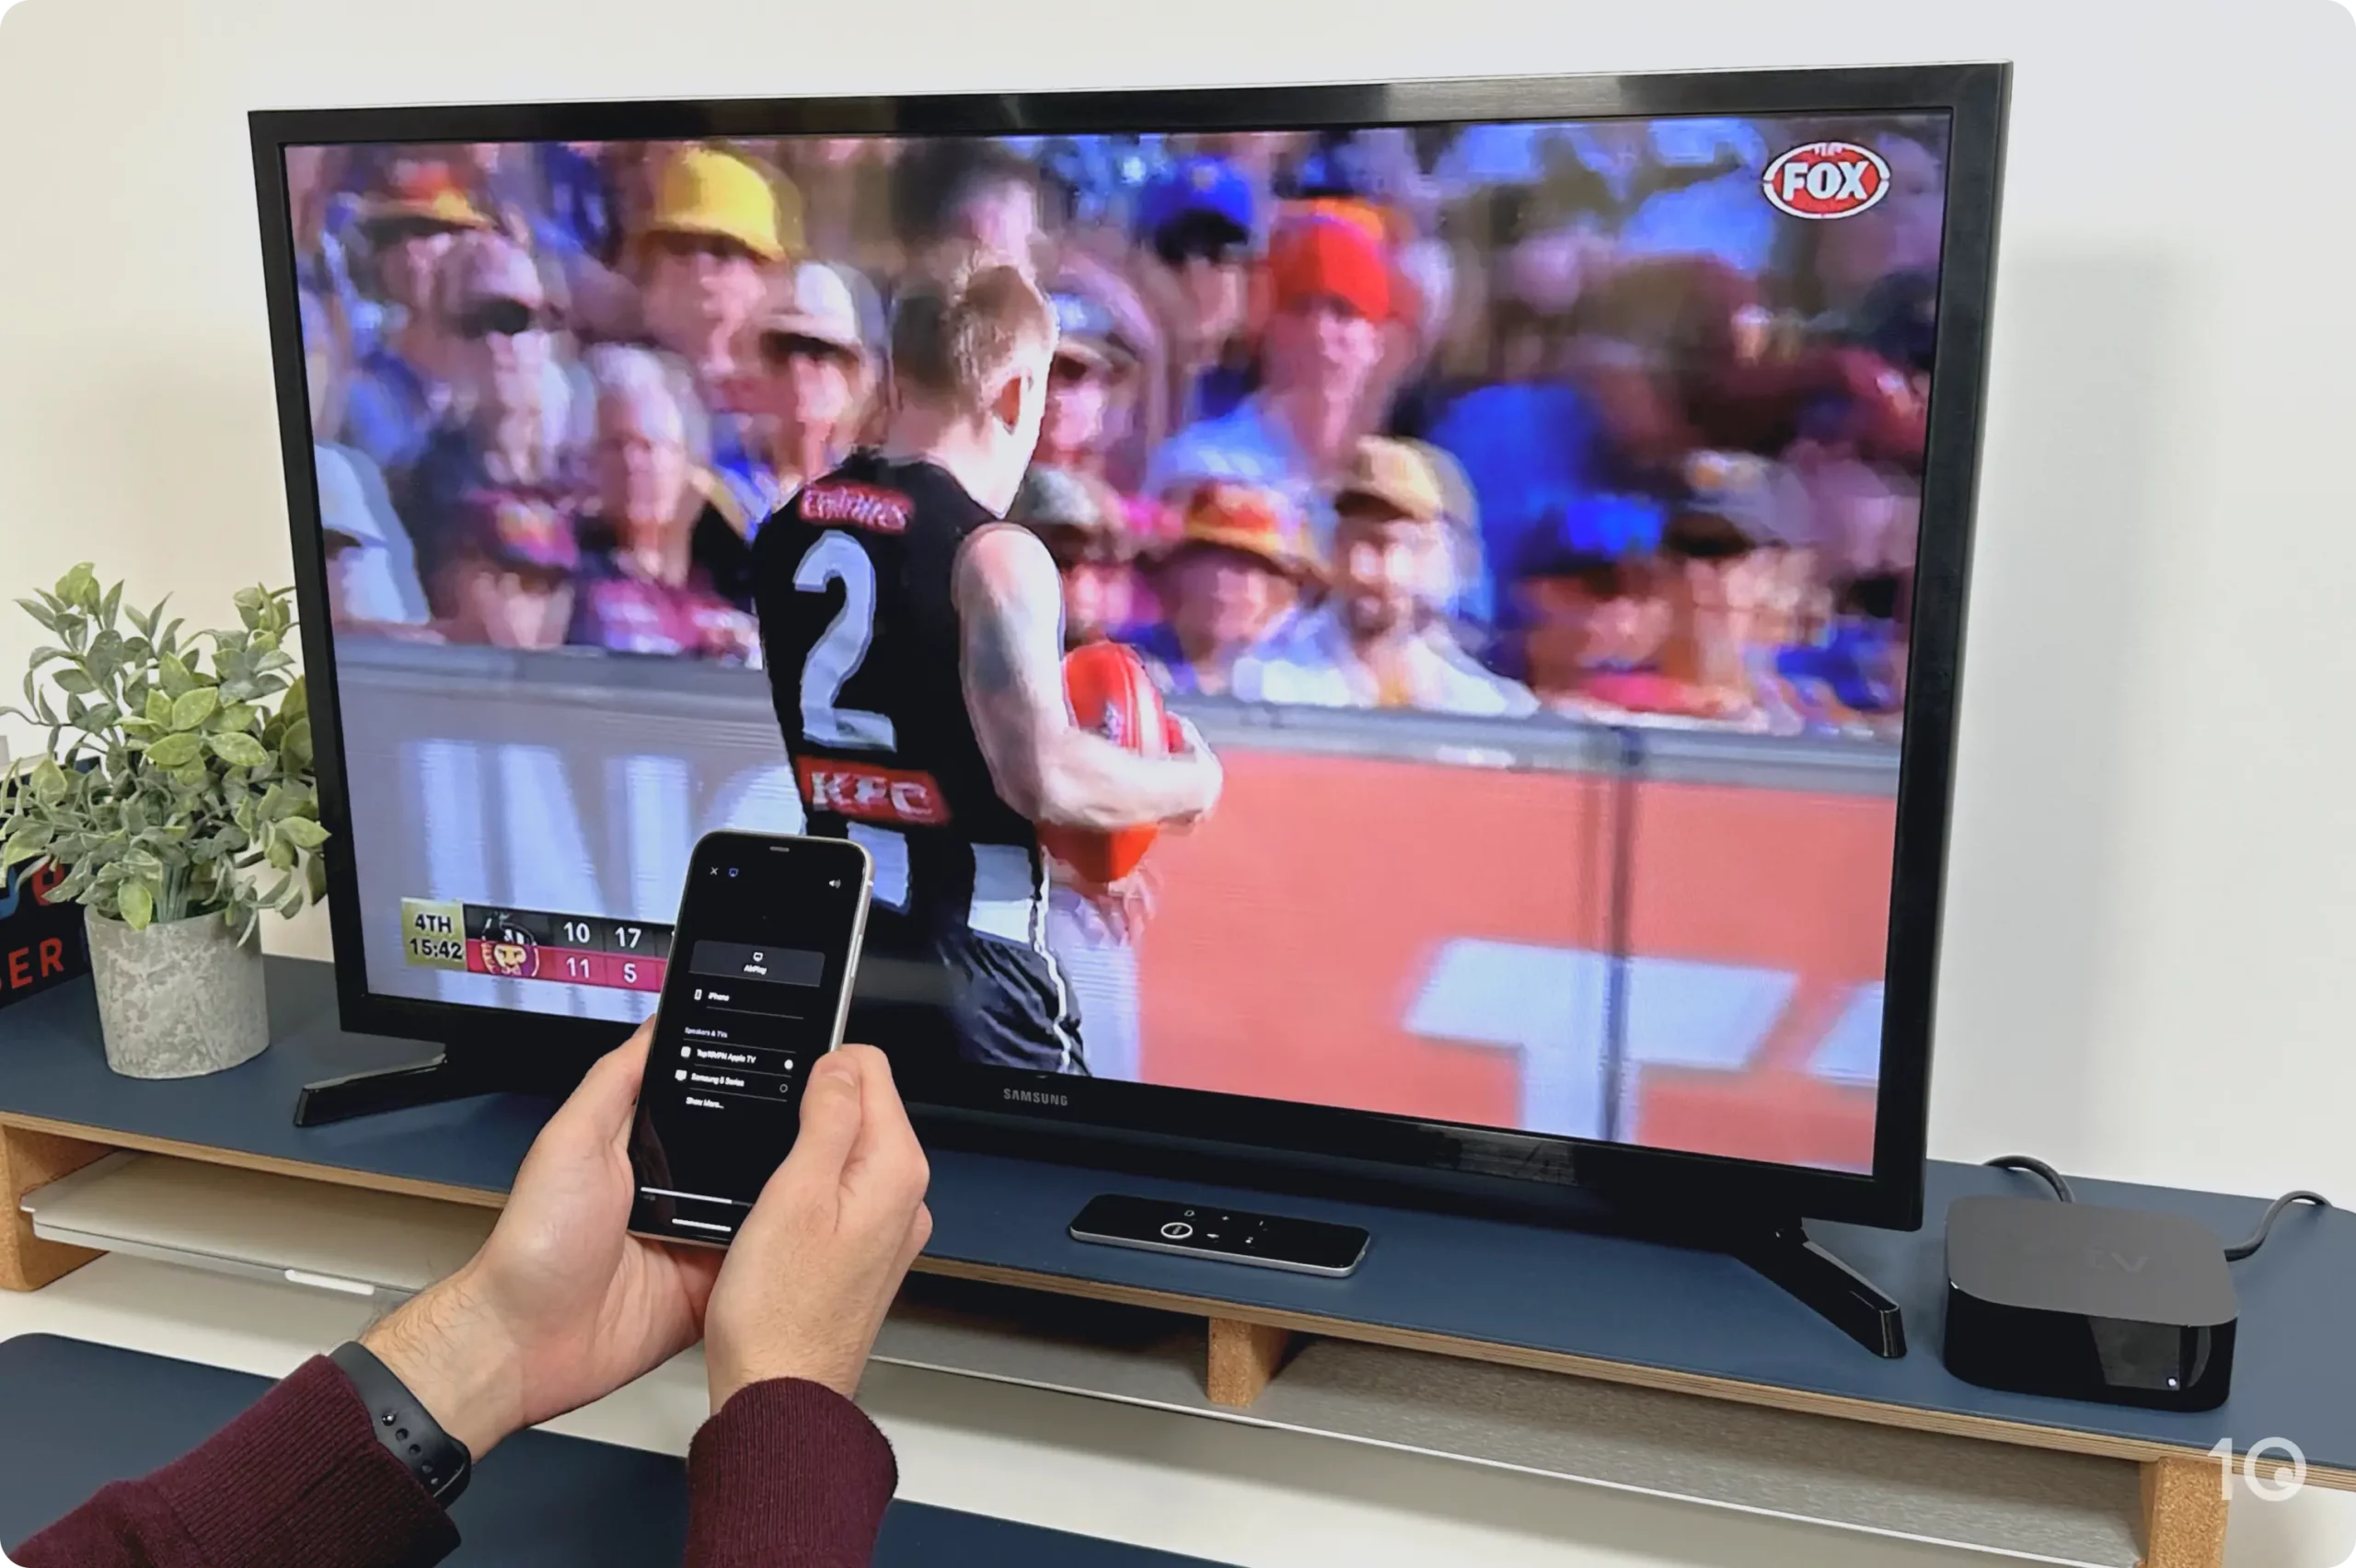 AFL on Apple TV via AirPlay